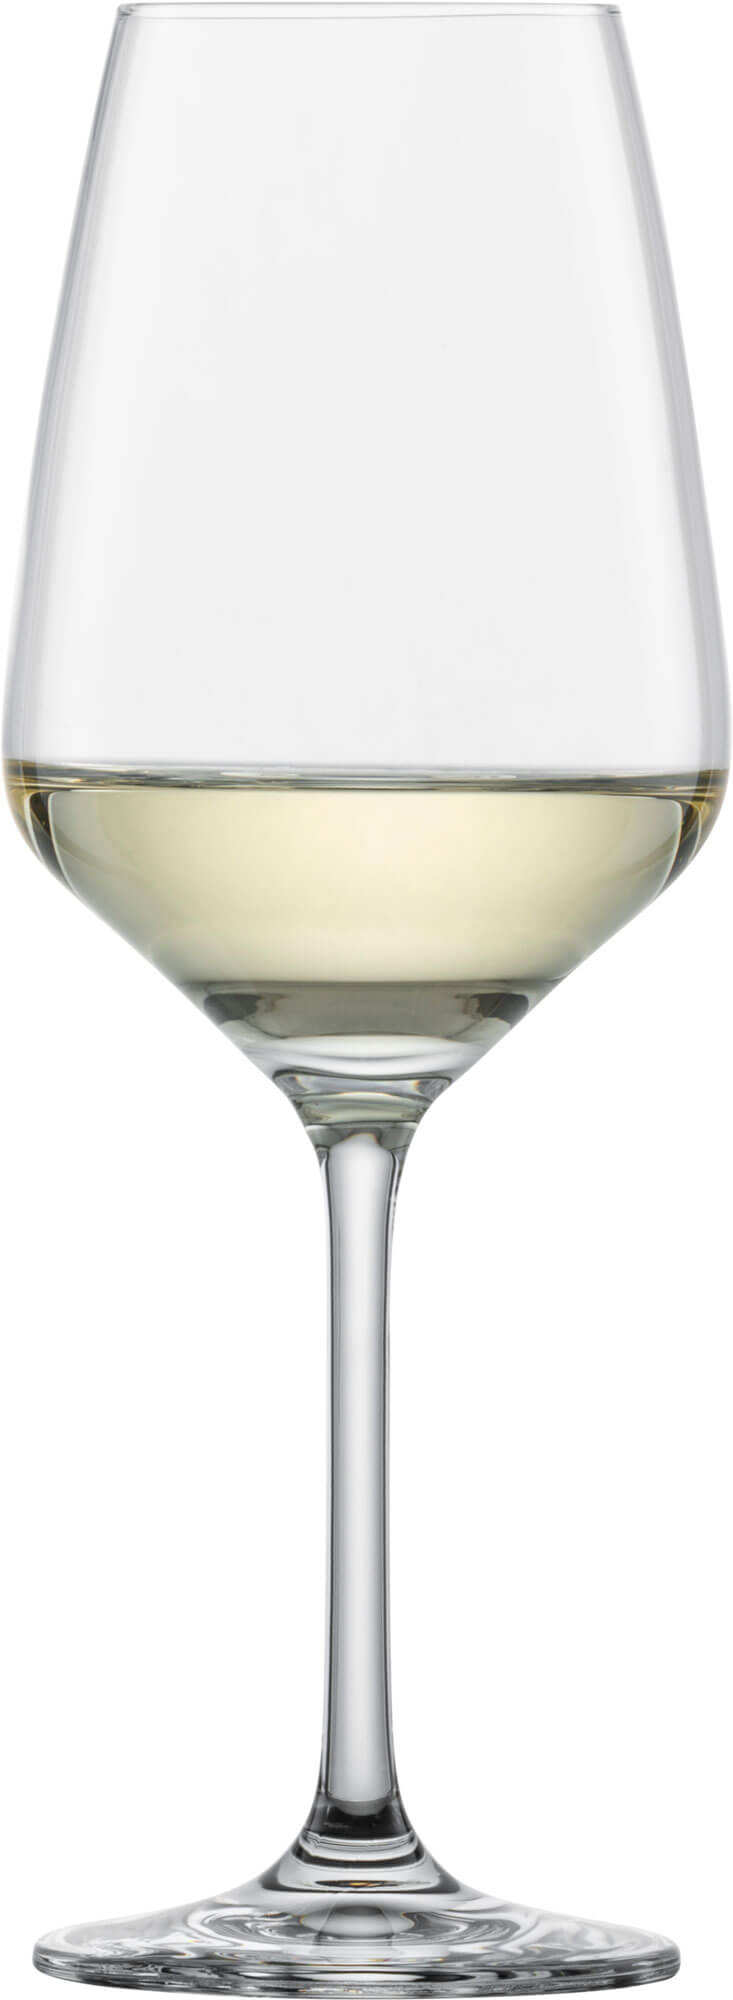 Weißweinglas Taste, Schott Zwiesel - 356ml, 0,1l+0,2l Eiche (6 Stk.)